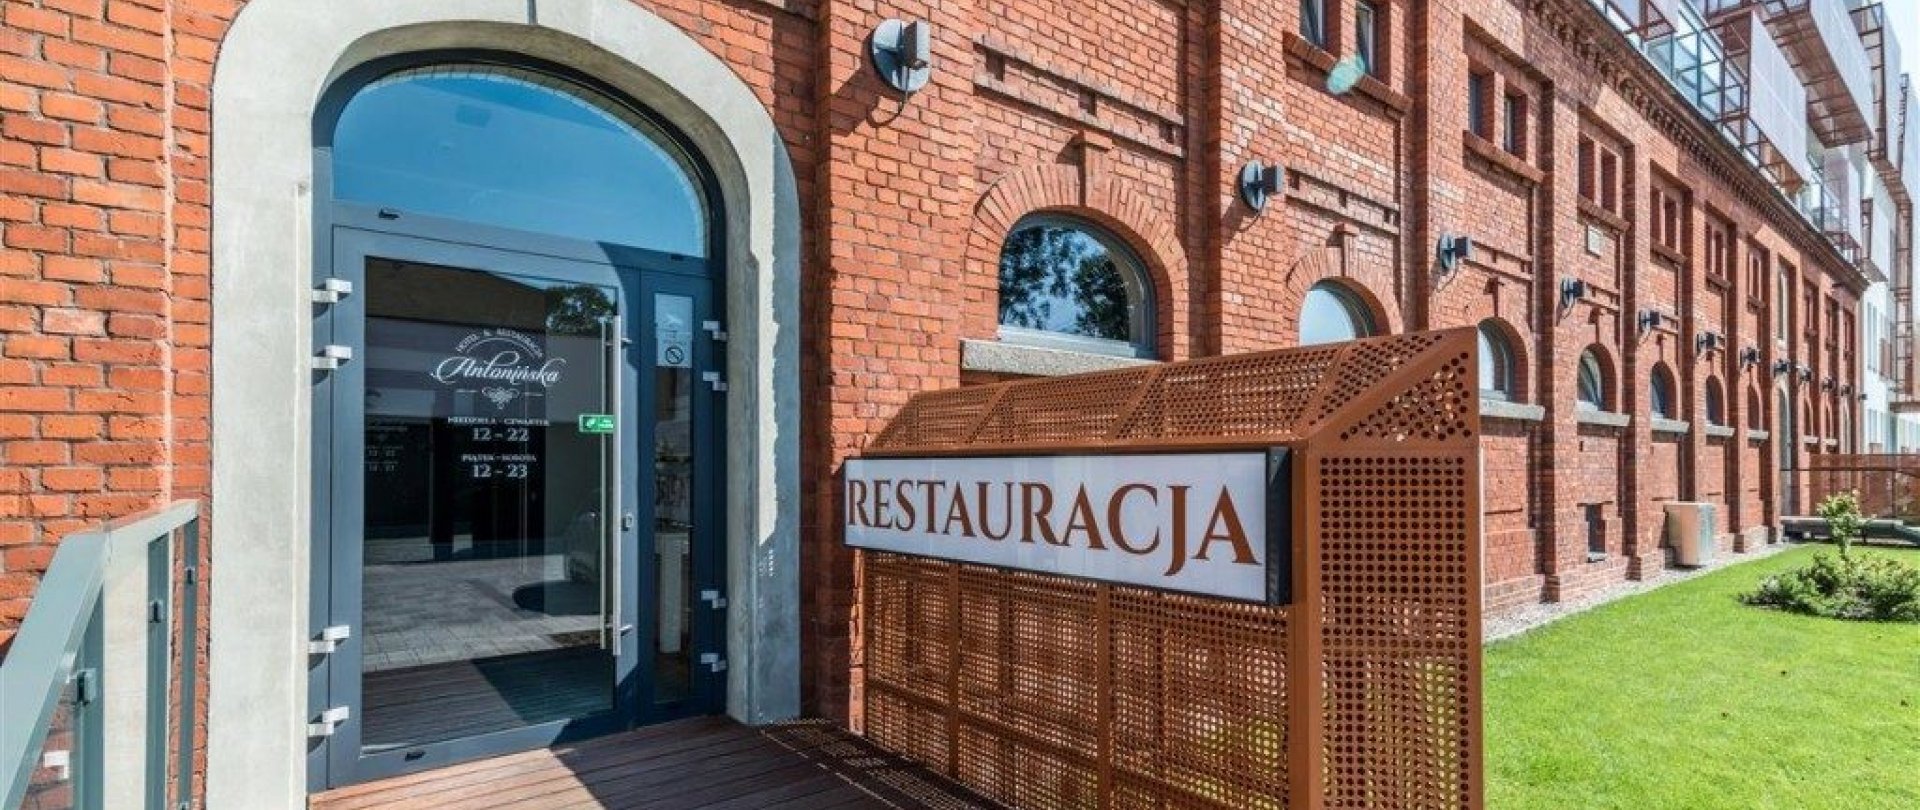 Hotel & Restauracja Antonińska podpisuje się pod akcją Poznaj swojego kontrahenta